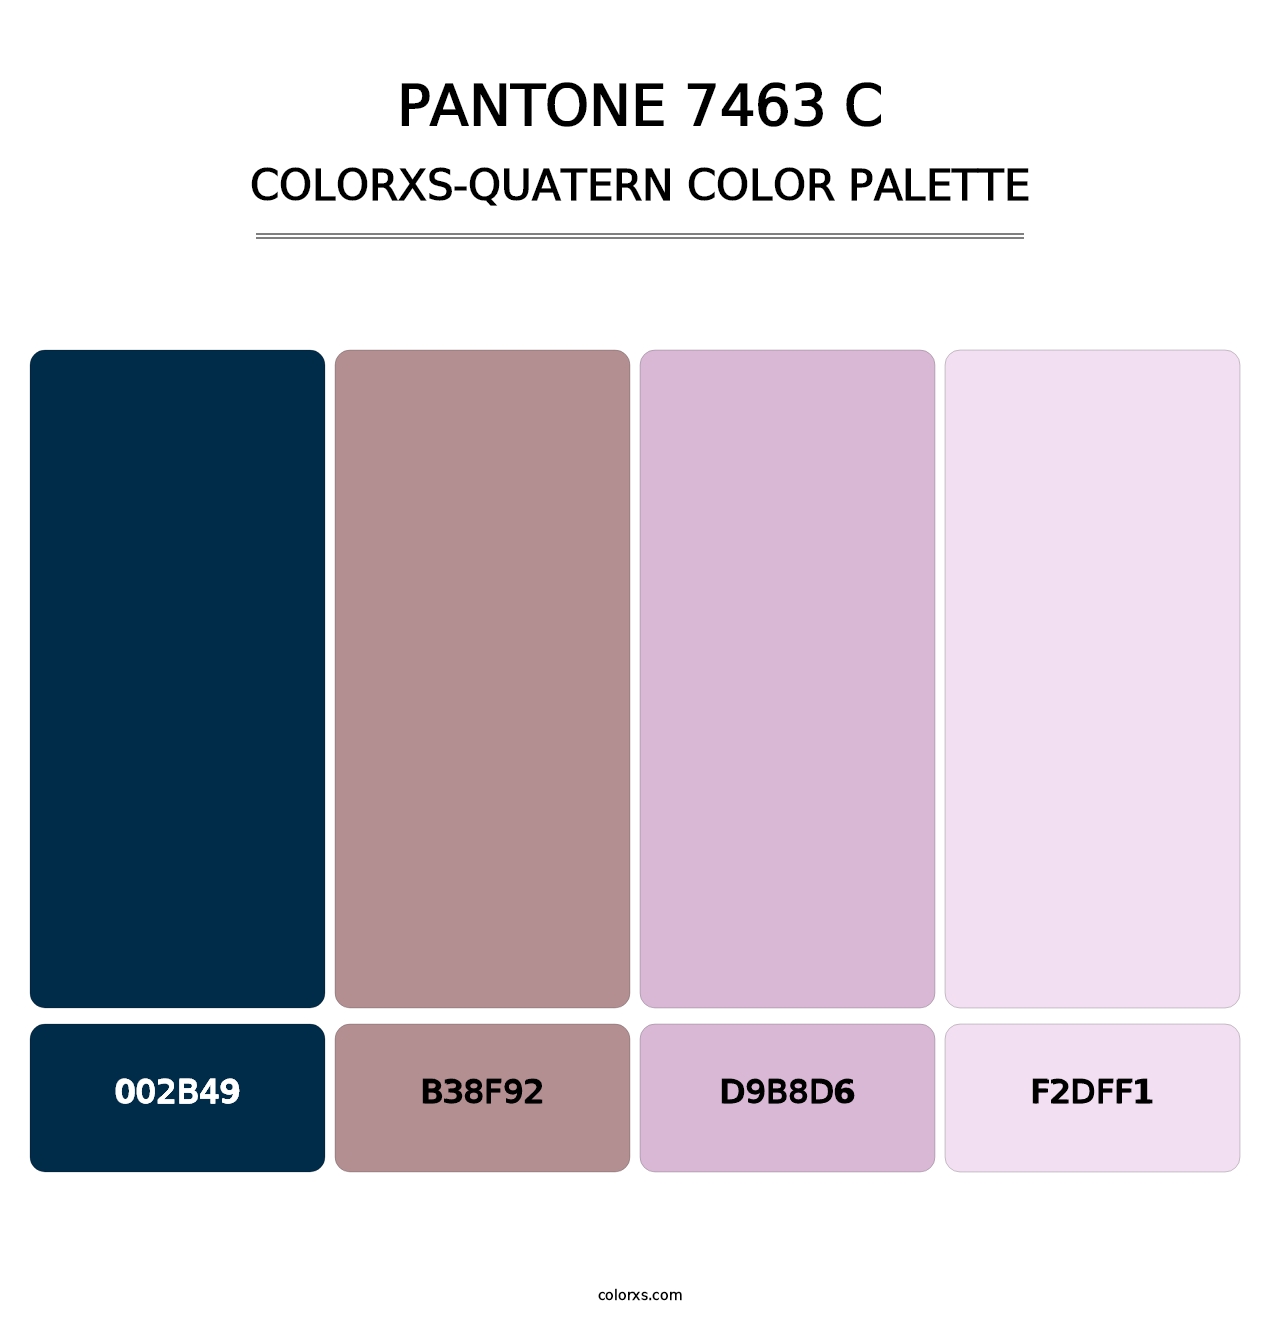 PANTONE 7463 C - Colorxs Quatern Palette